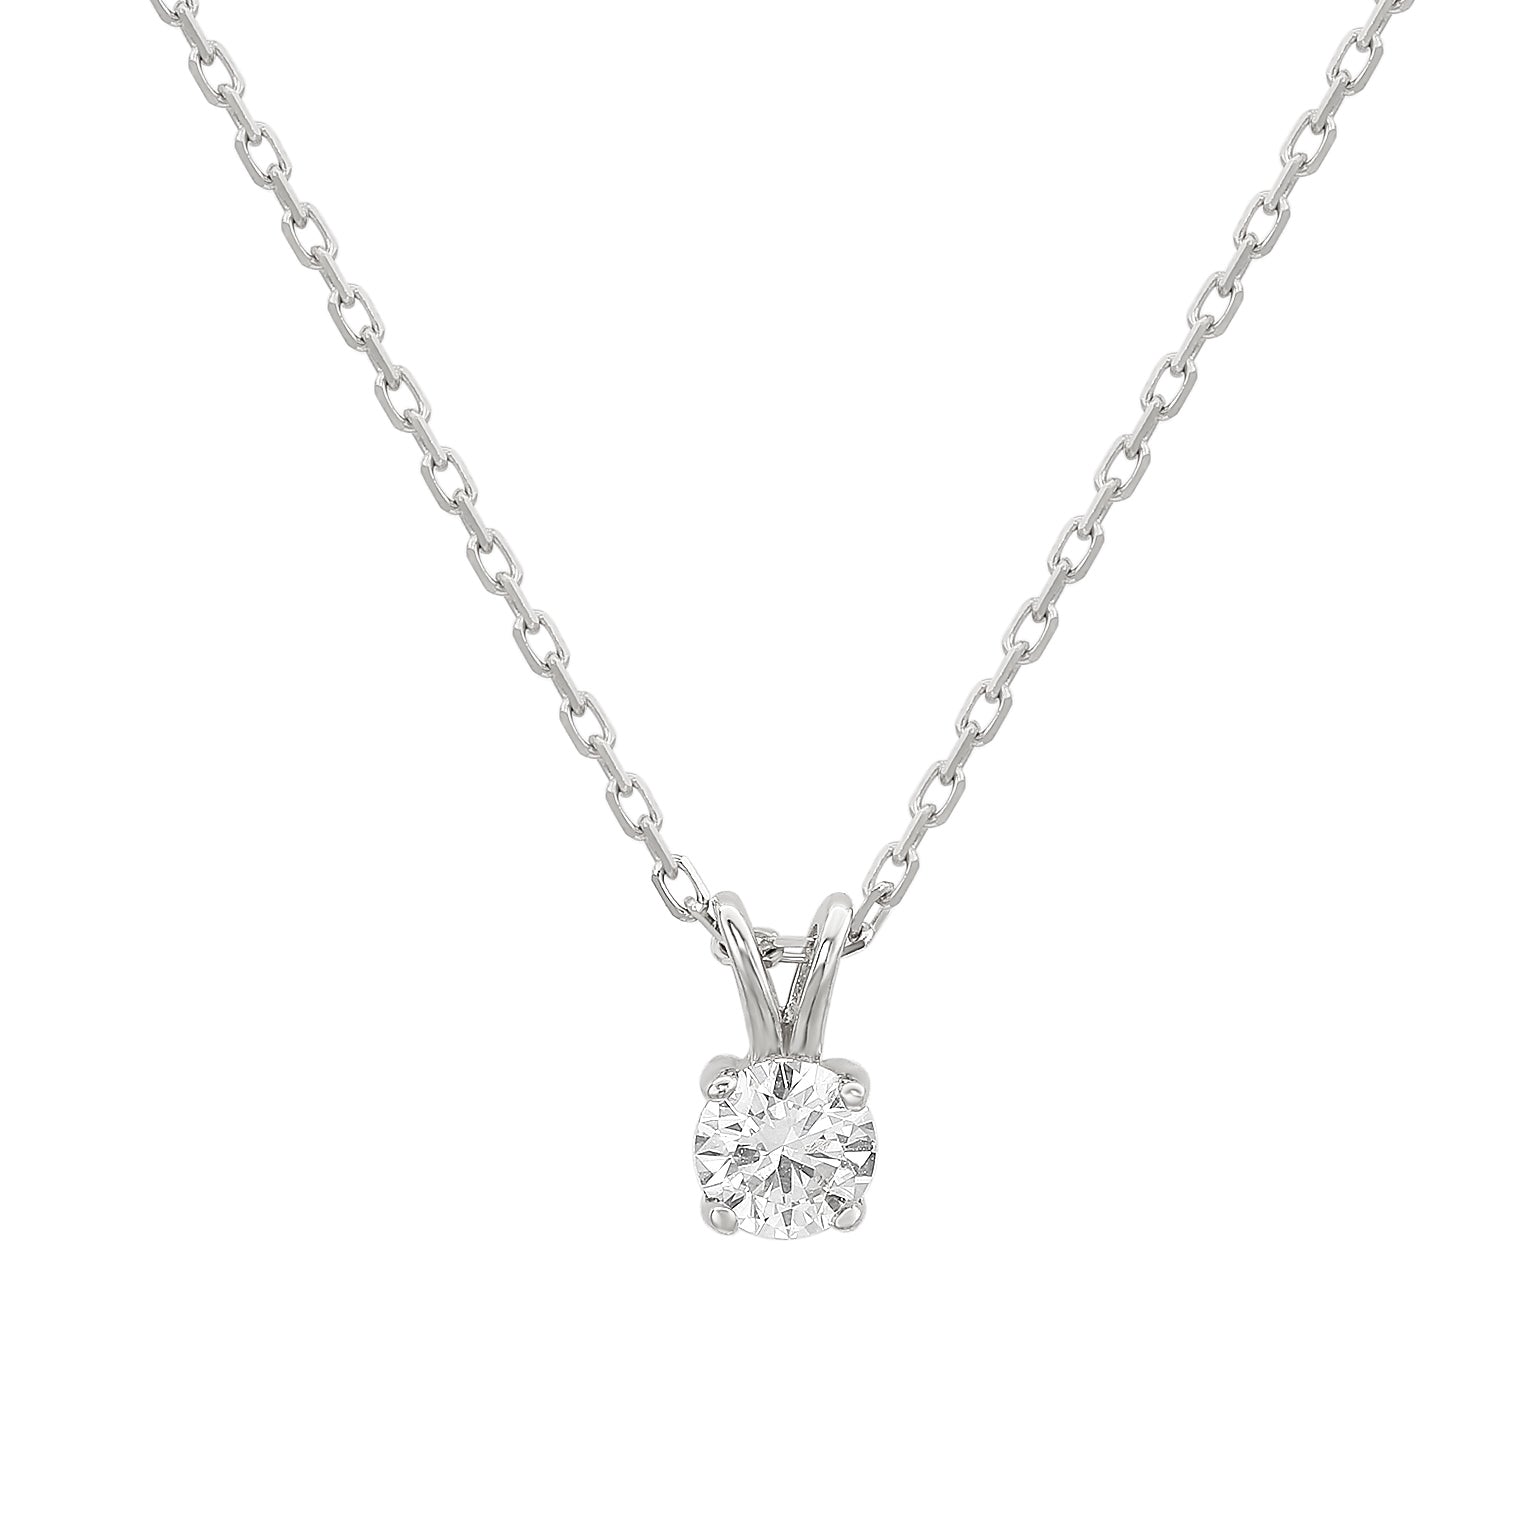 SUZY LEVIAN Suzy Levian 14K White Gold 0.26 ct. tw. Diamond Solitaire Pendant Necklace